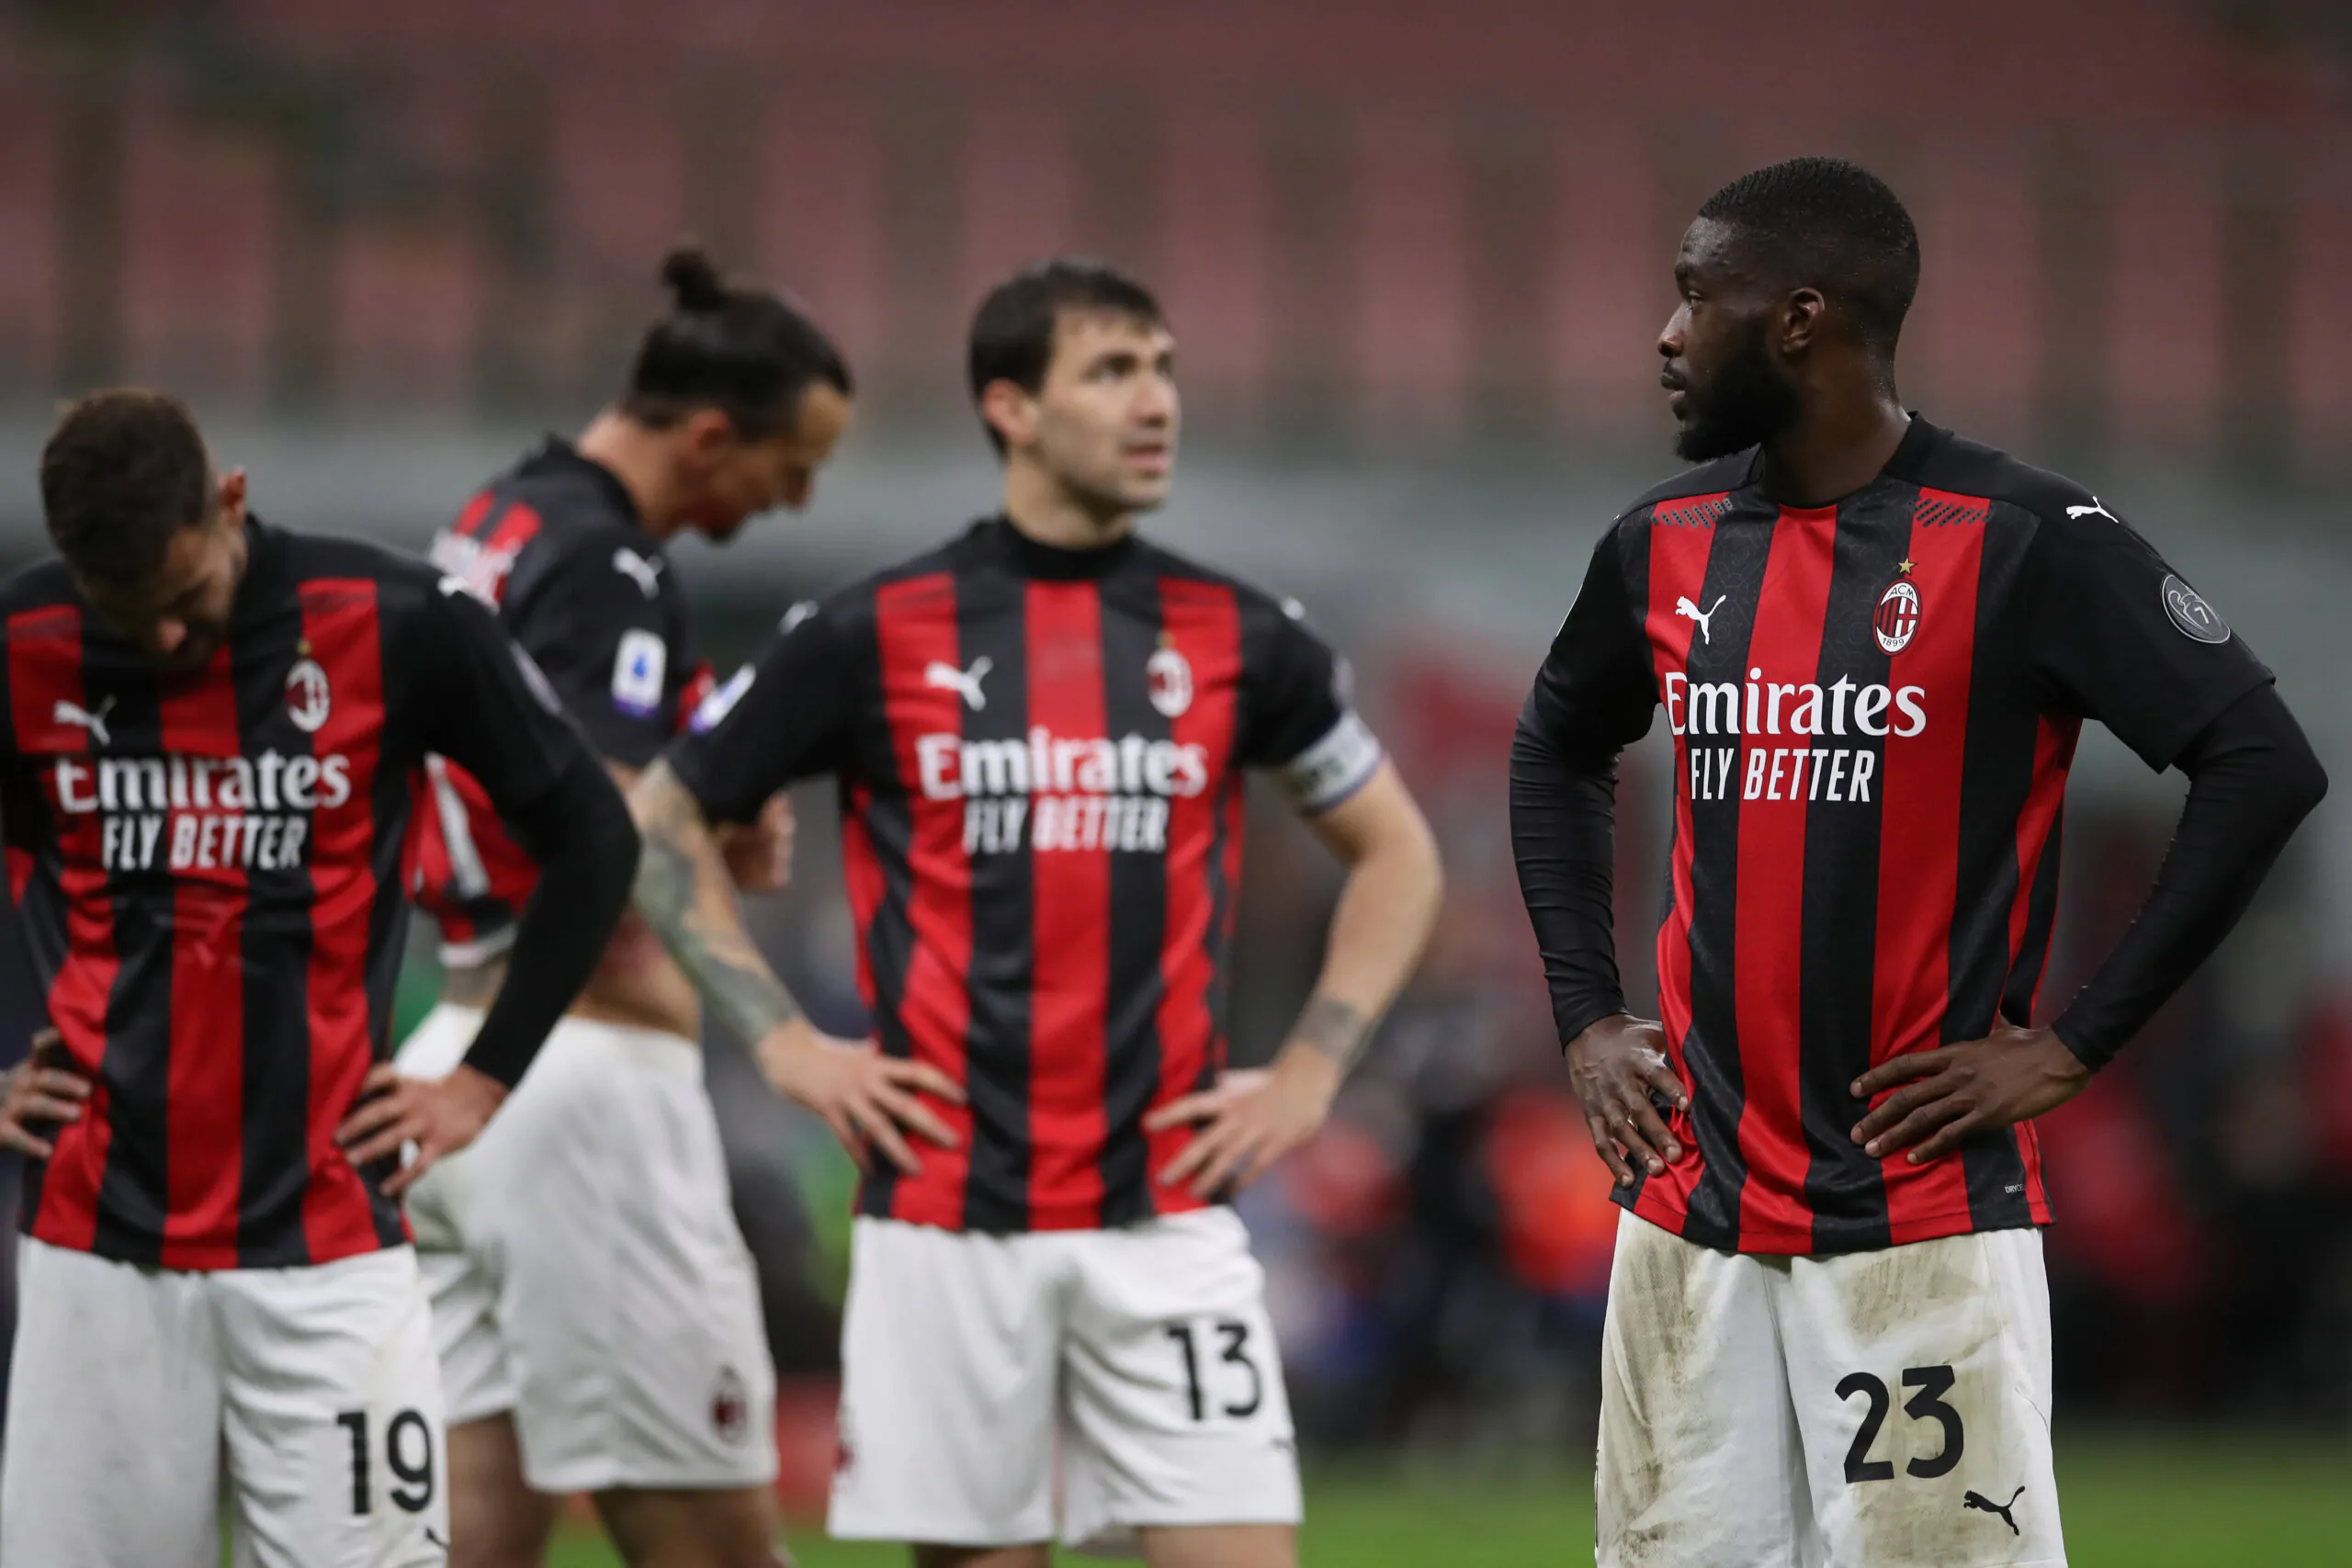 Il centrocampista del Milan è sicuro: “Scudetto? Vi svelo il nostro obiettivo”